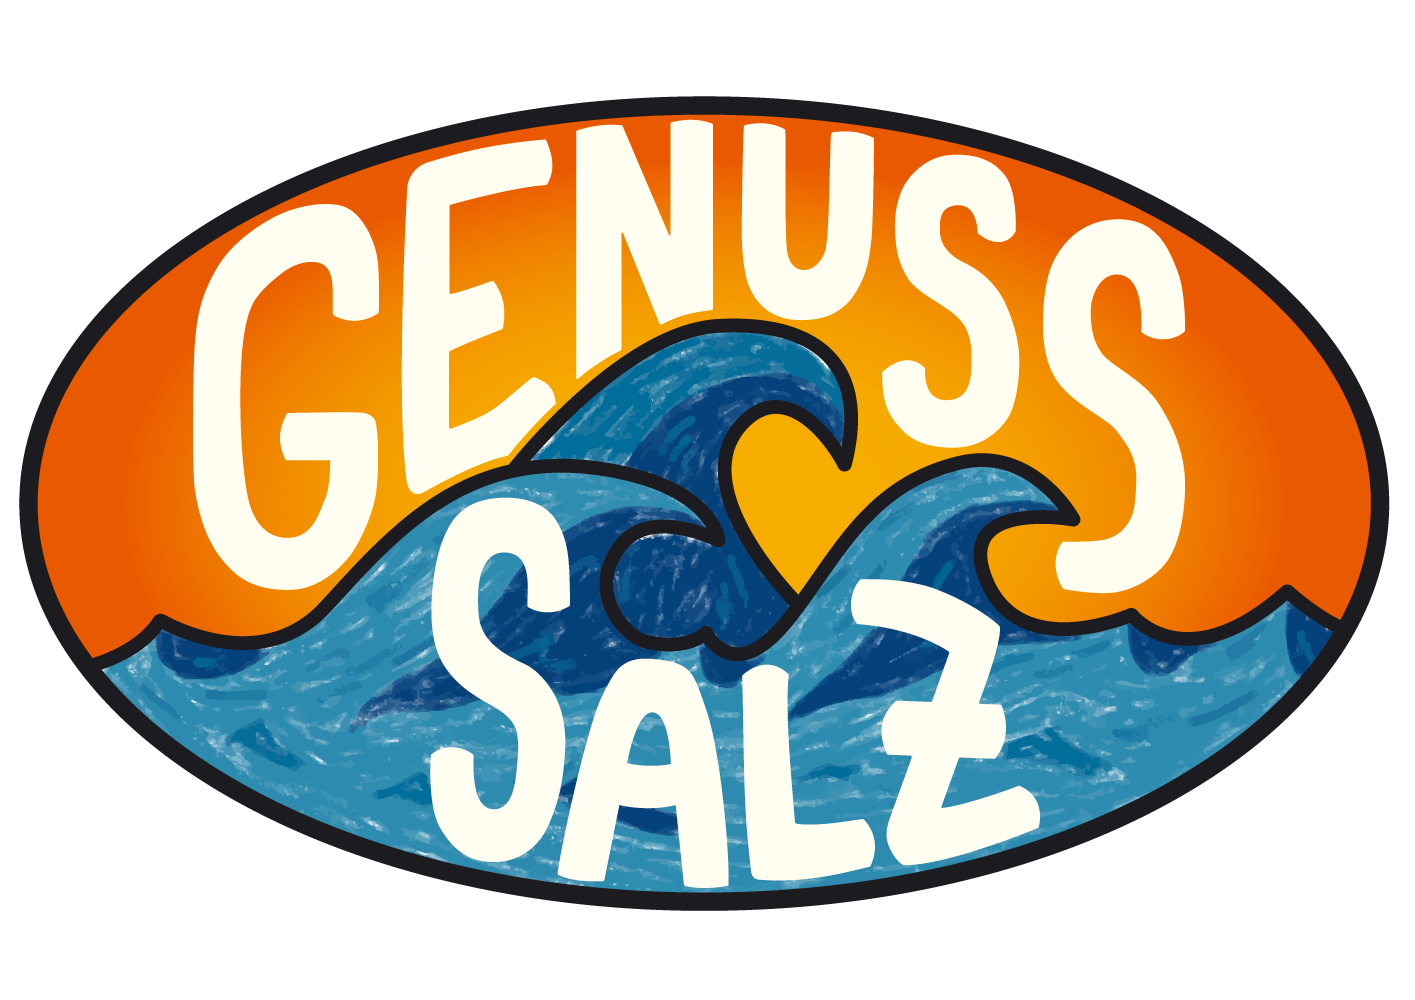 Genuss Salz